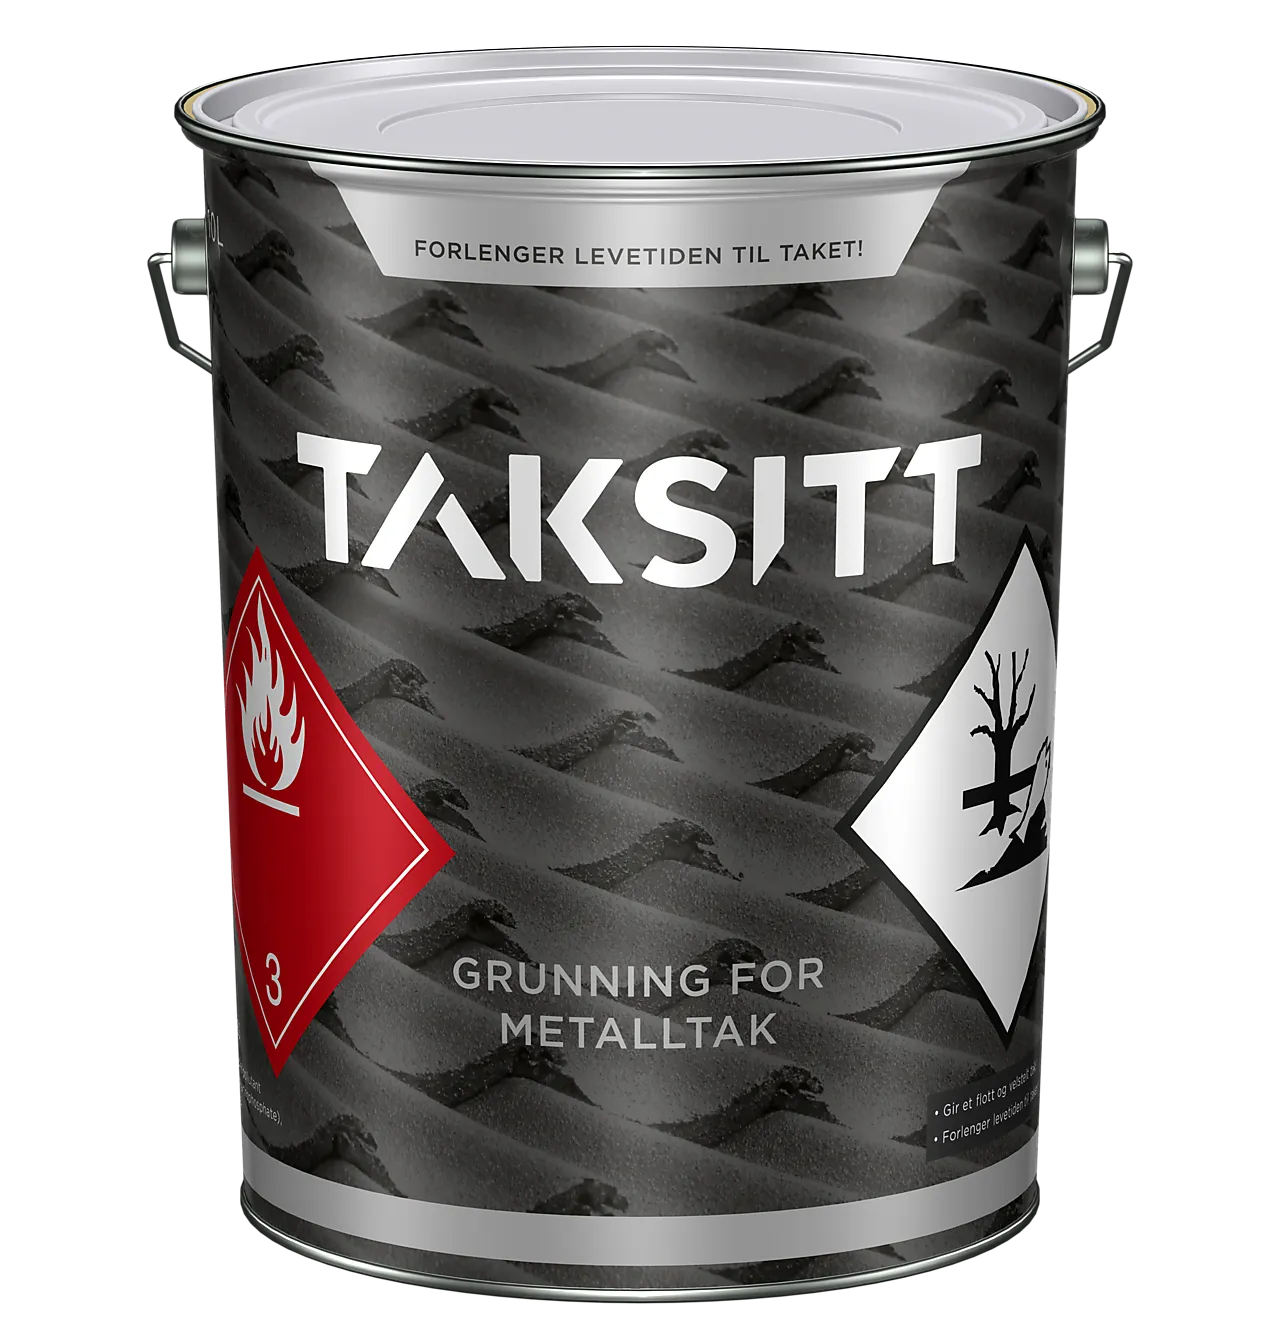 TakSitt grunning for metall tak 10 liter